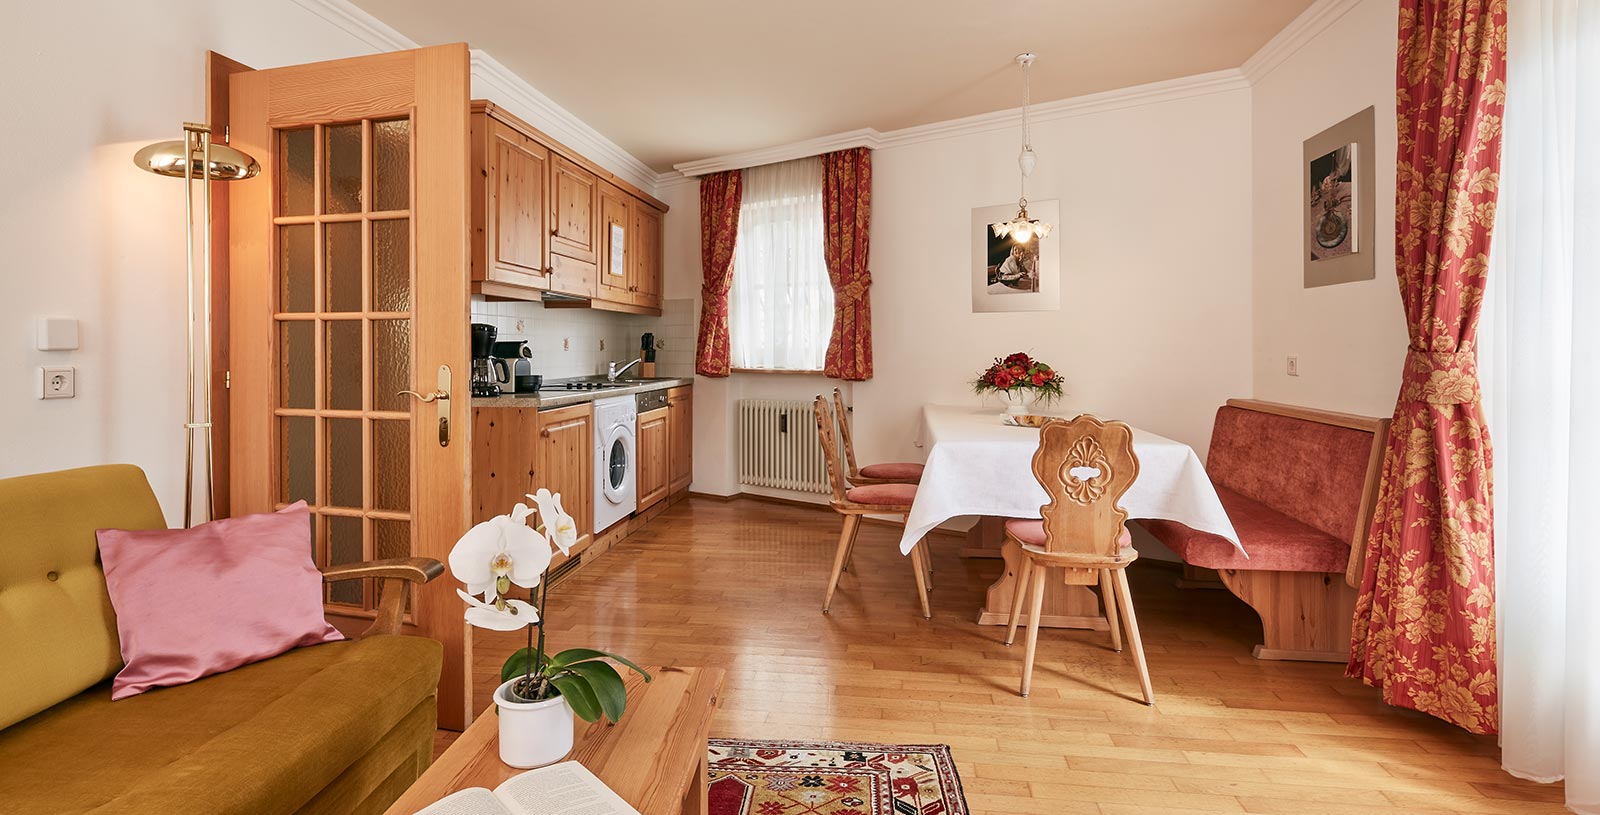 Wohnküche einer Ferienwohnung des Chalet Cristina mit typischer Holzbank